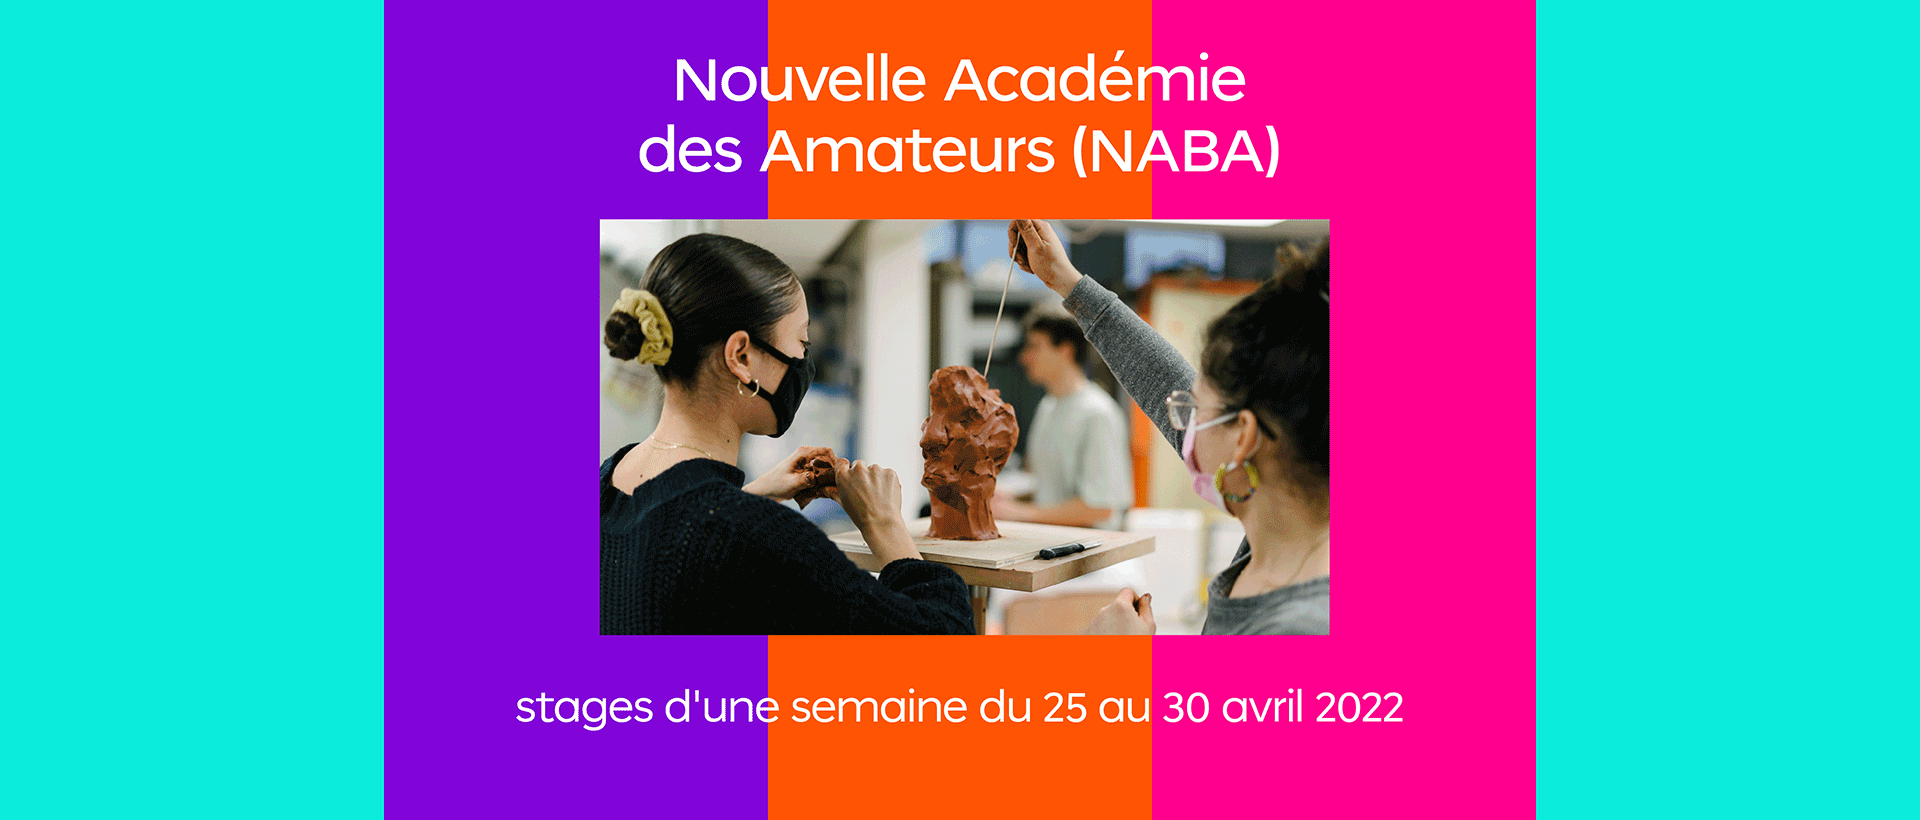 Nouvelle Académie des Amateurs (NABA) stages d’avril